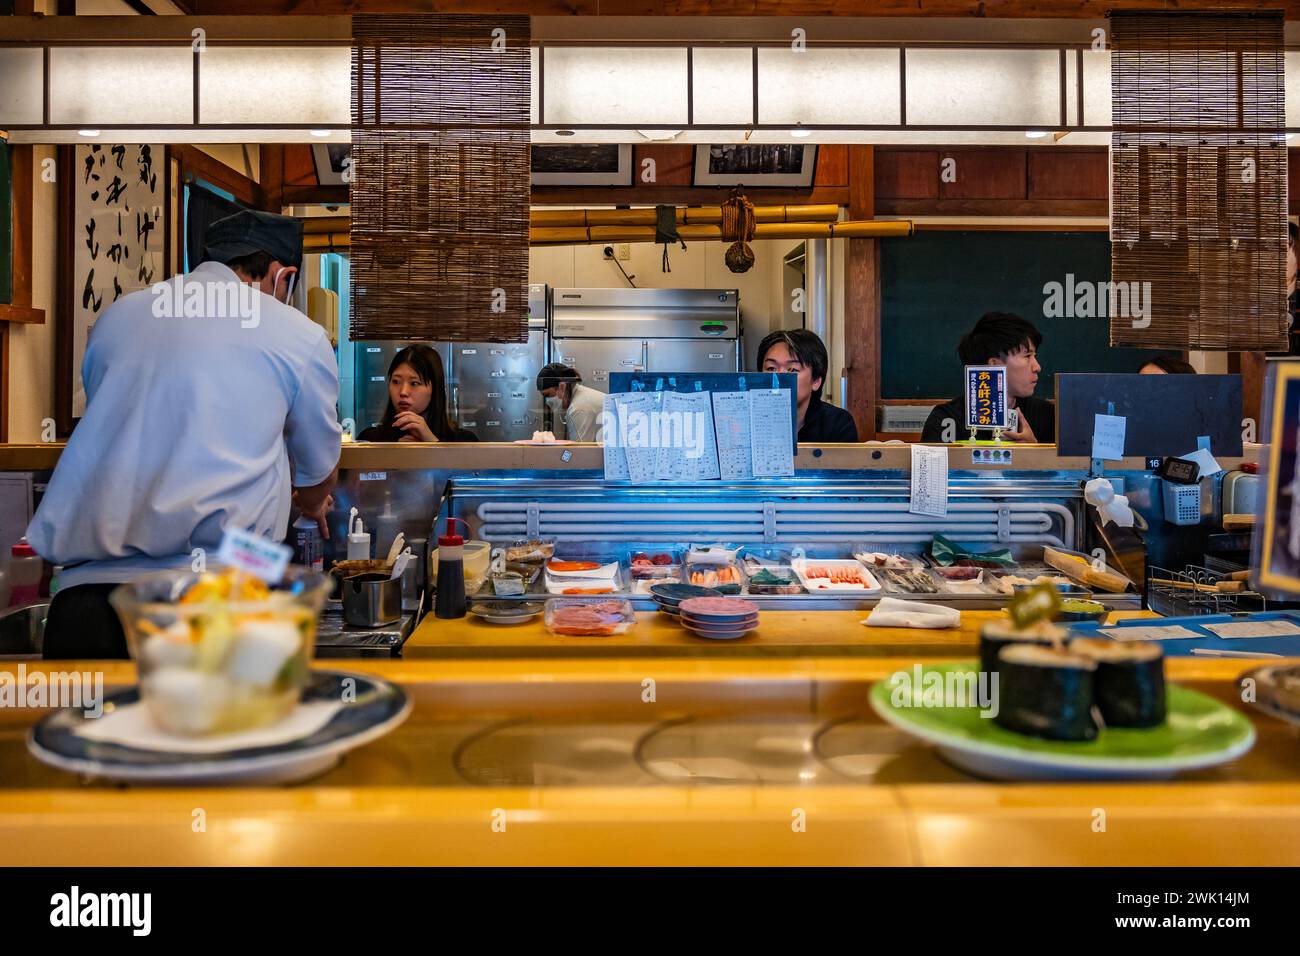 Pequeños platos de comida servidos en un carrusel en un restaurante local de Kaiten-sushi. Hokkaido, Japón. Foto de stock